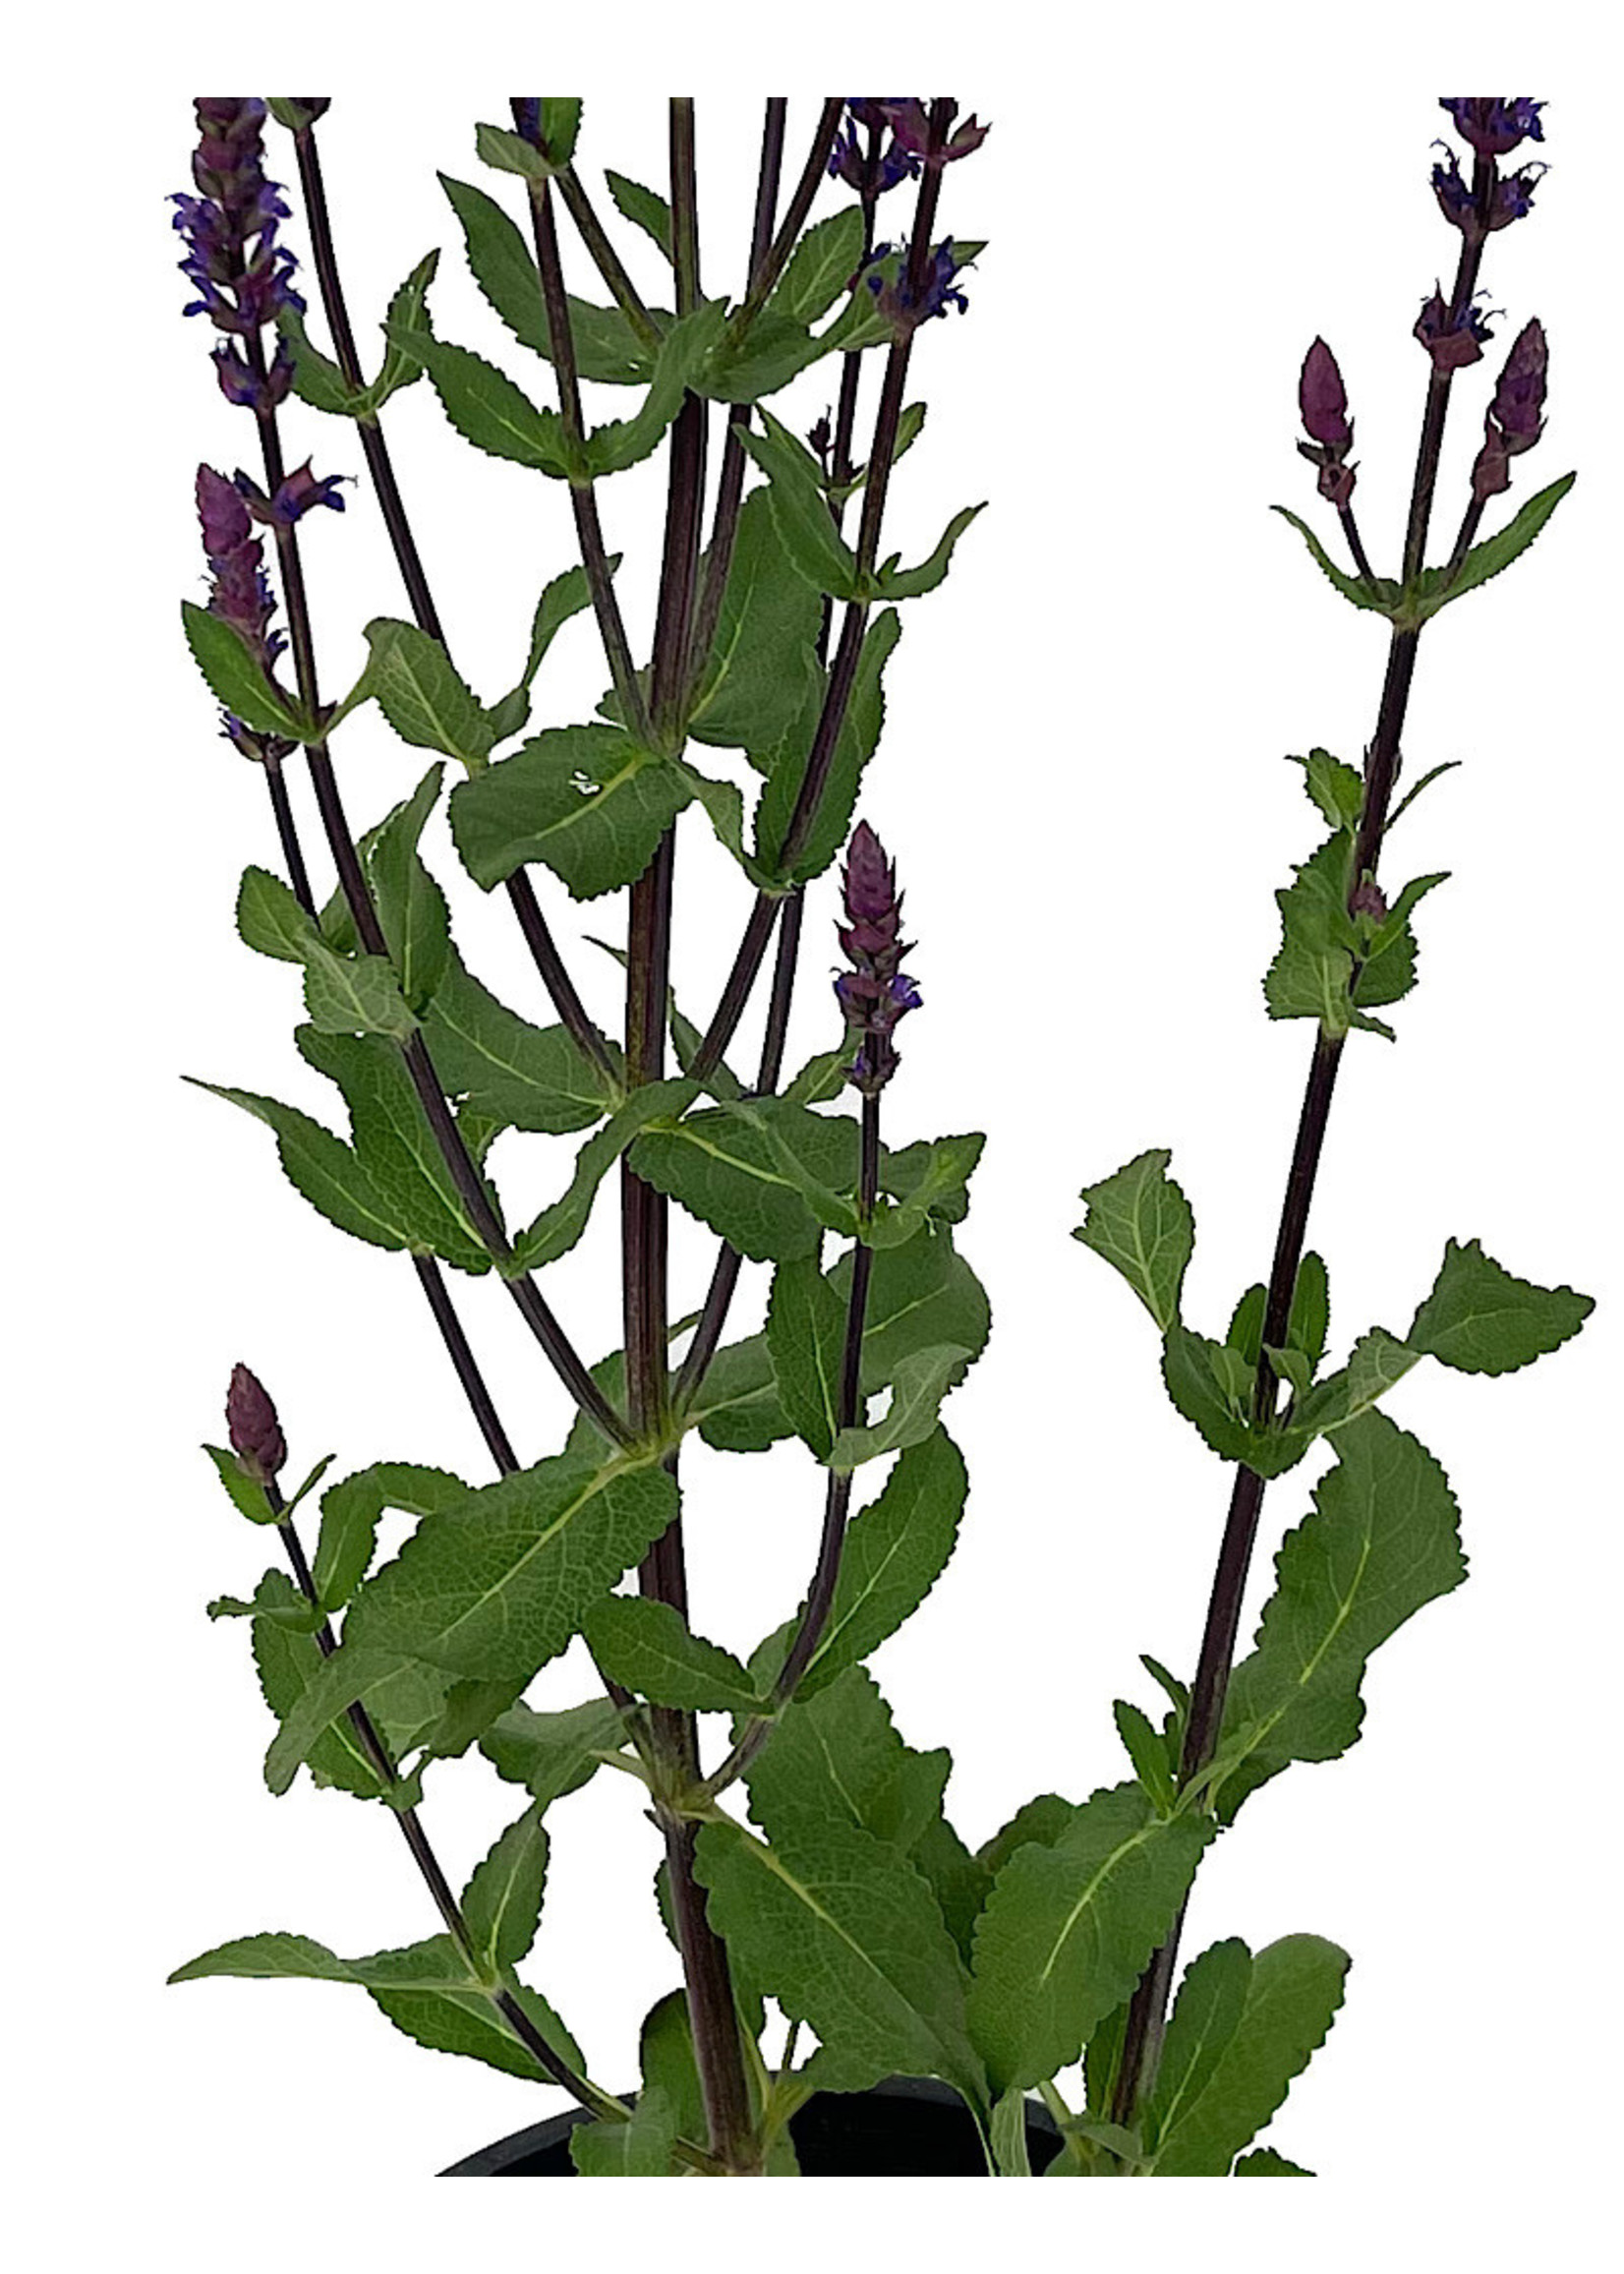 Salvia n. 'Caradonna' 1 Gallon